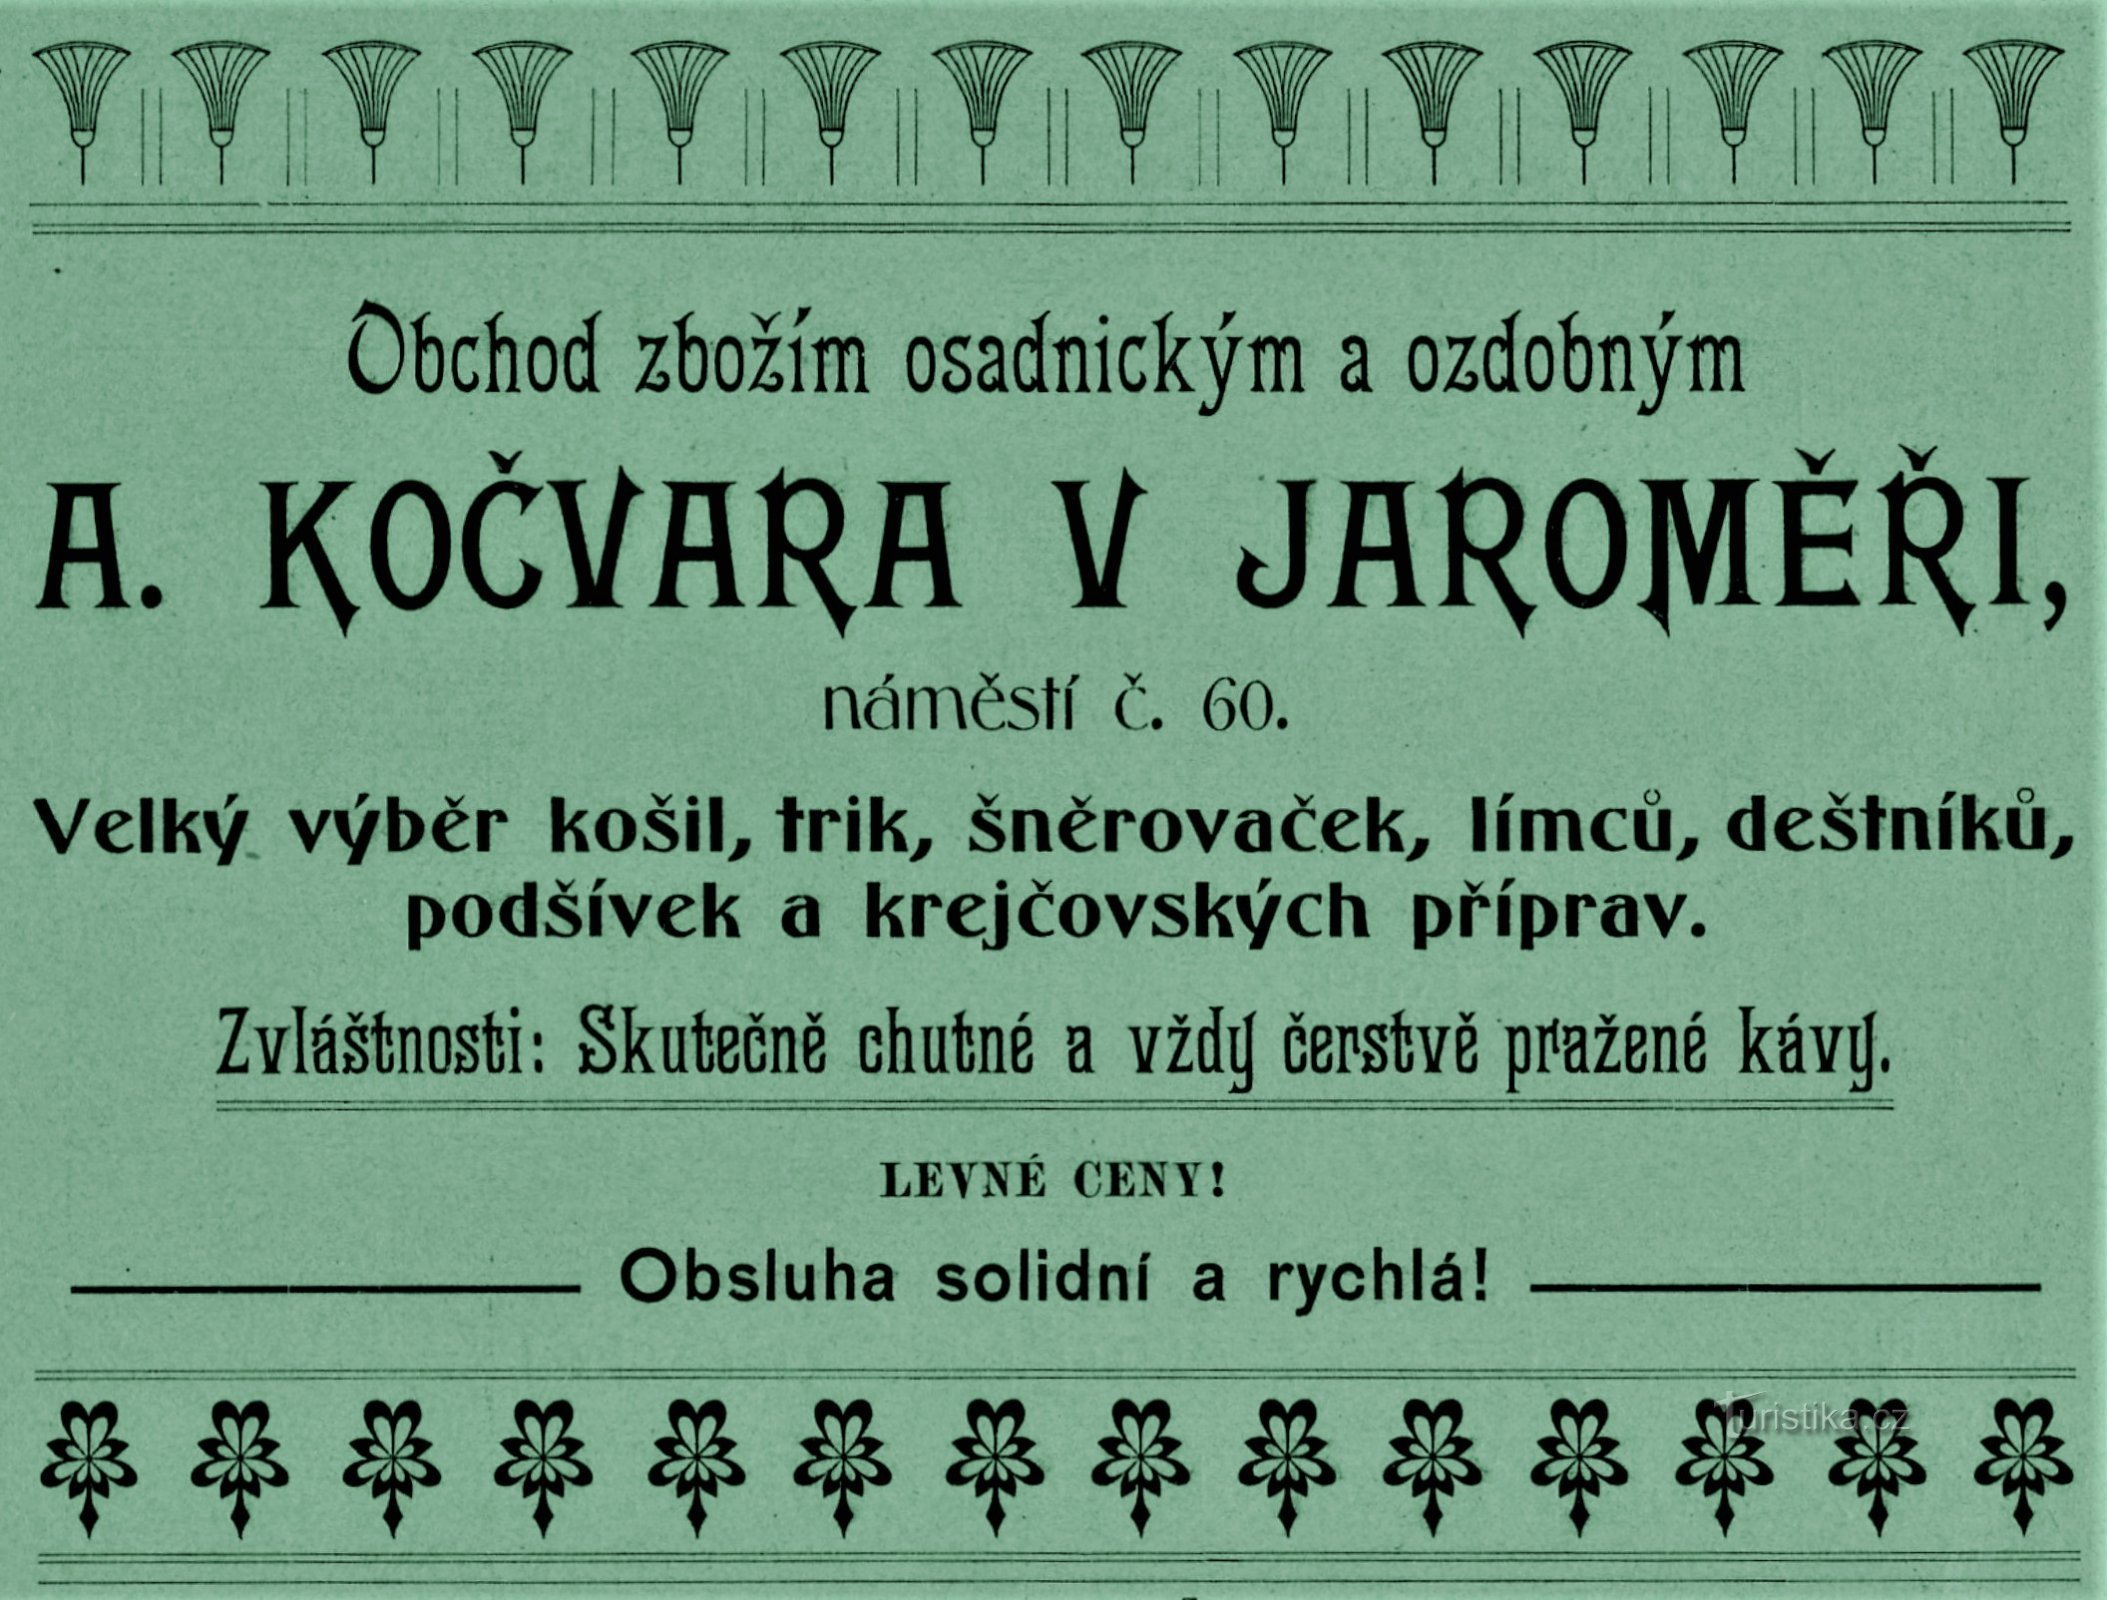 A. Kočvara-yhtiön nykyaikainen mainos Jaroměřissa vuodelta 1903